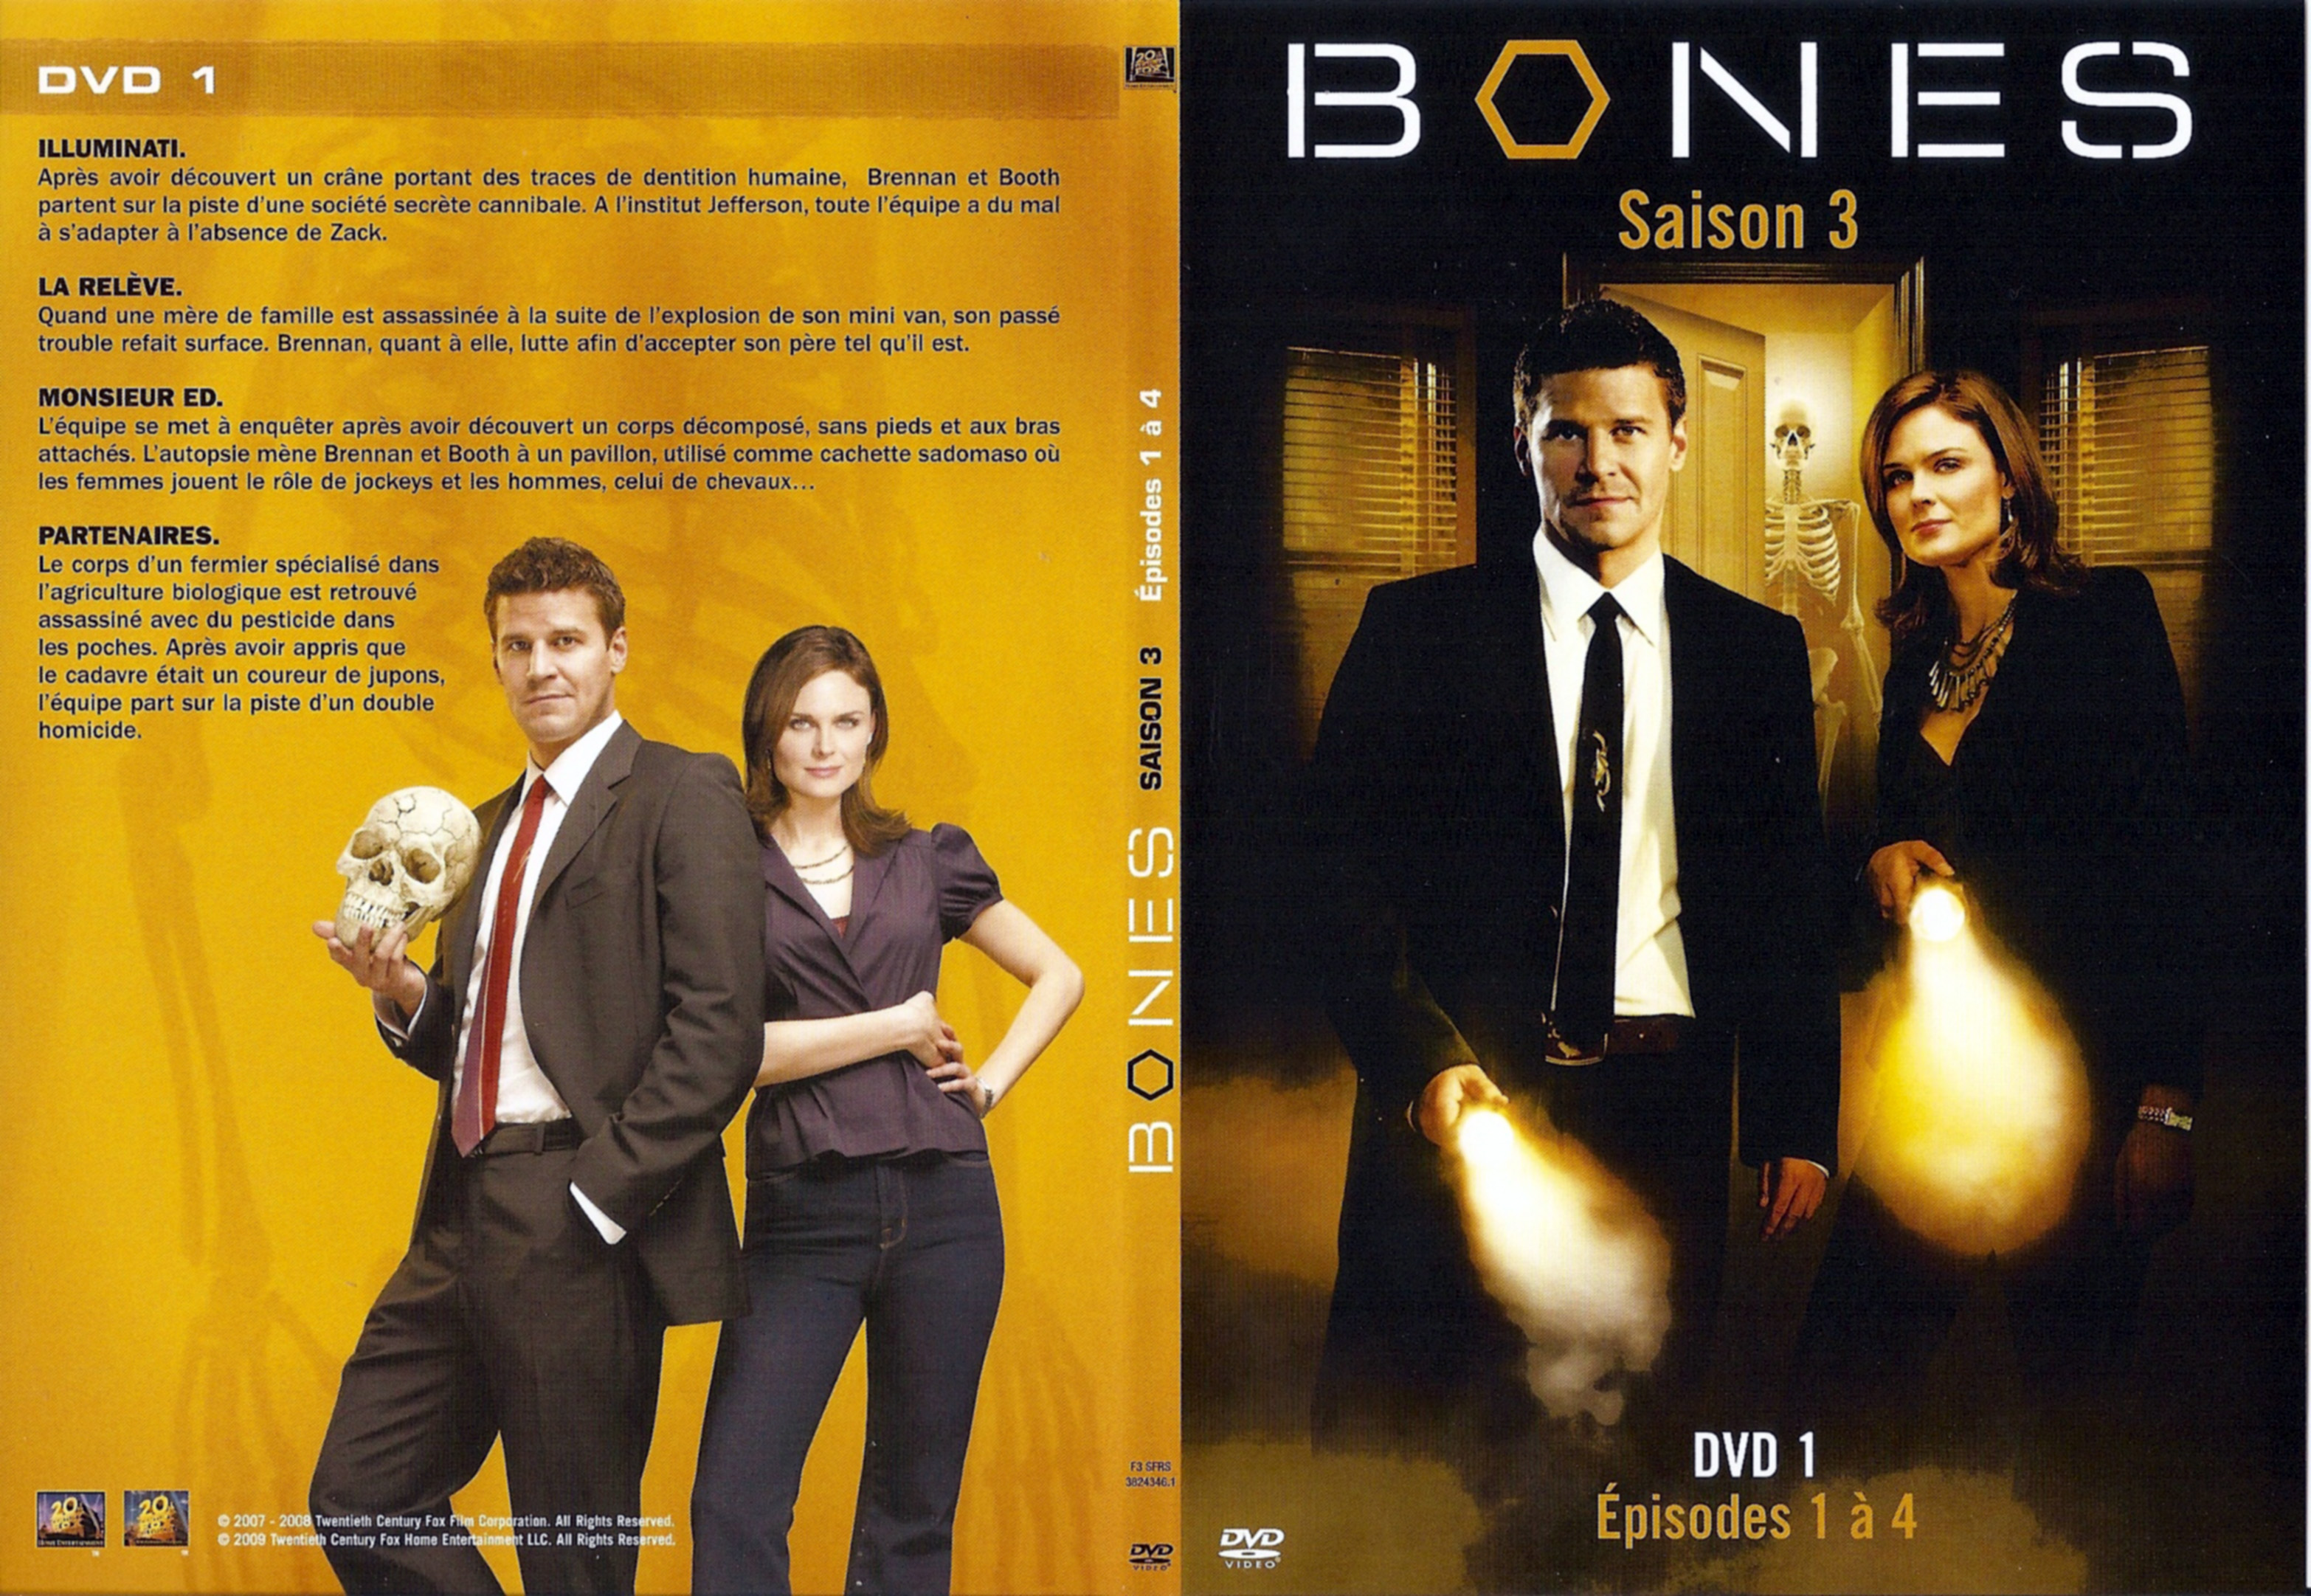 Jaquette DVD Bones Saison 3 DVD 1